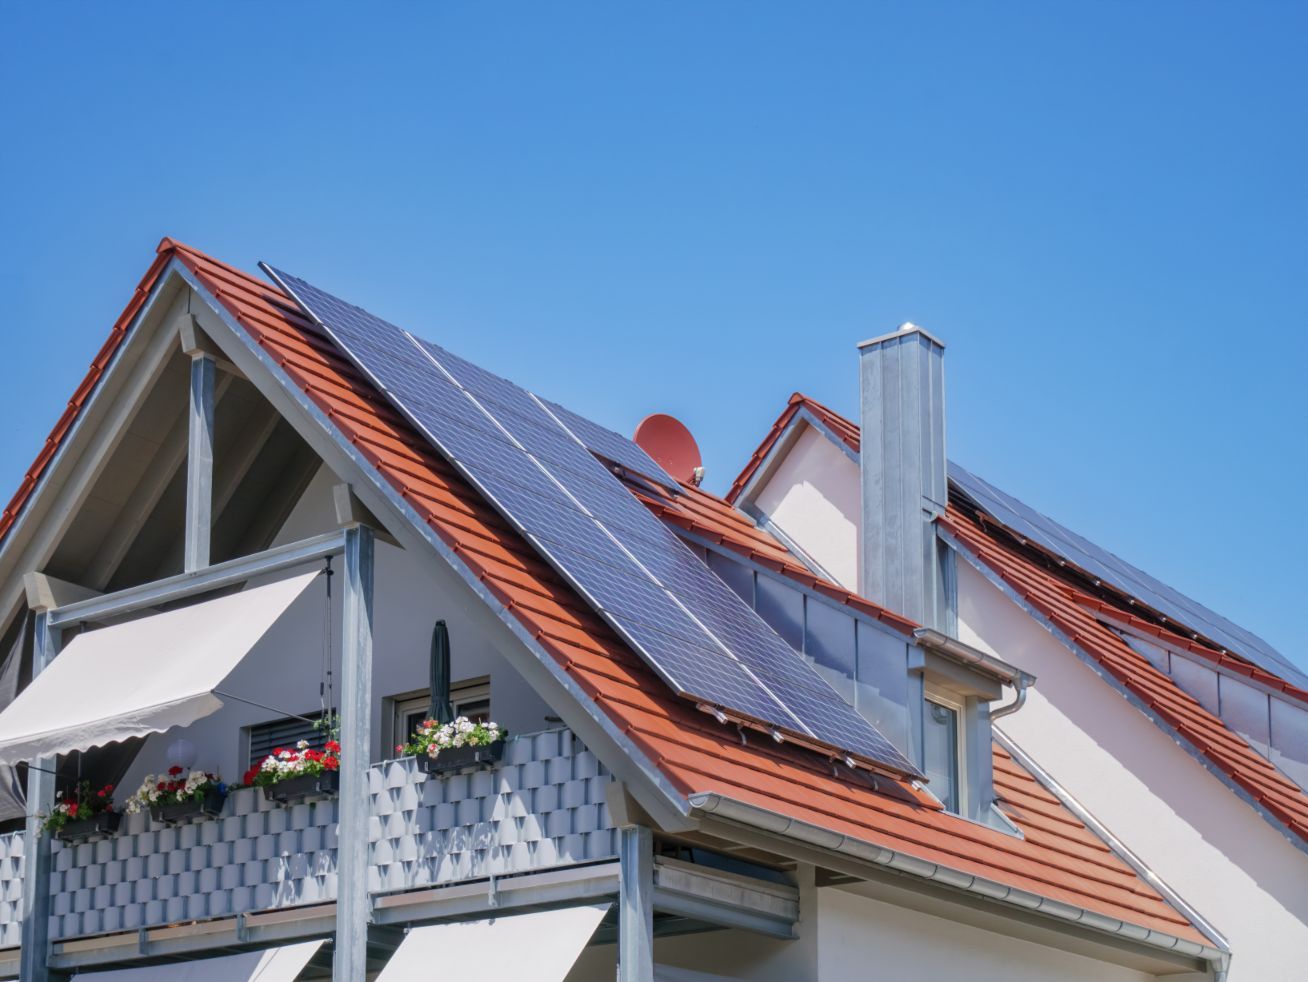 Casa sustentable, muestra de la colocación de paneles solares en el techo de una casa para generar electricidad.